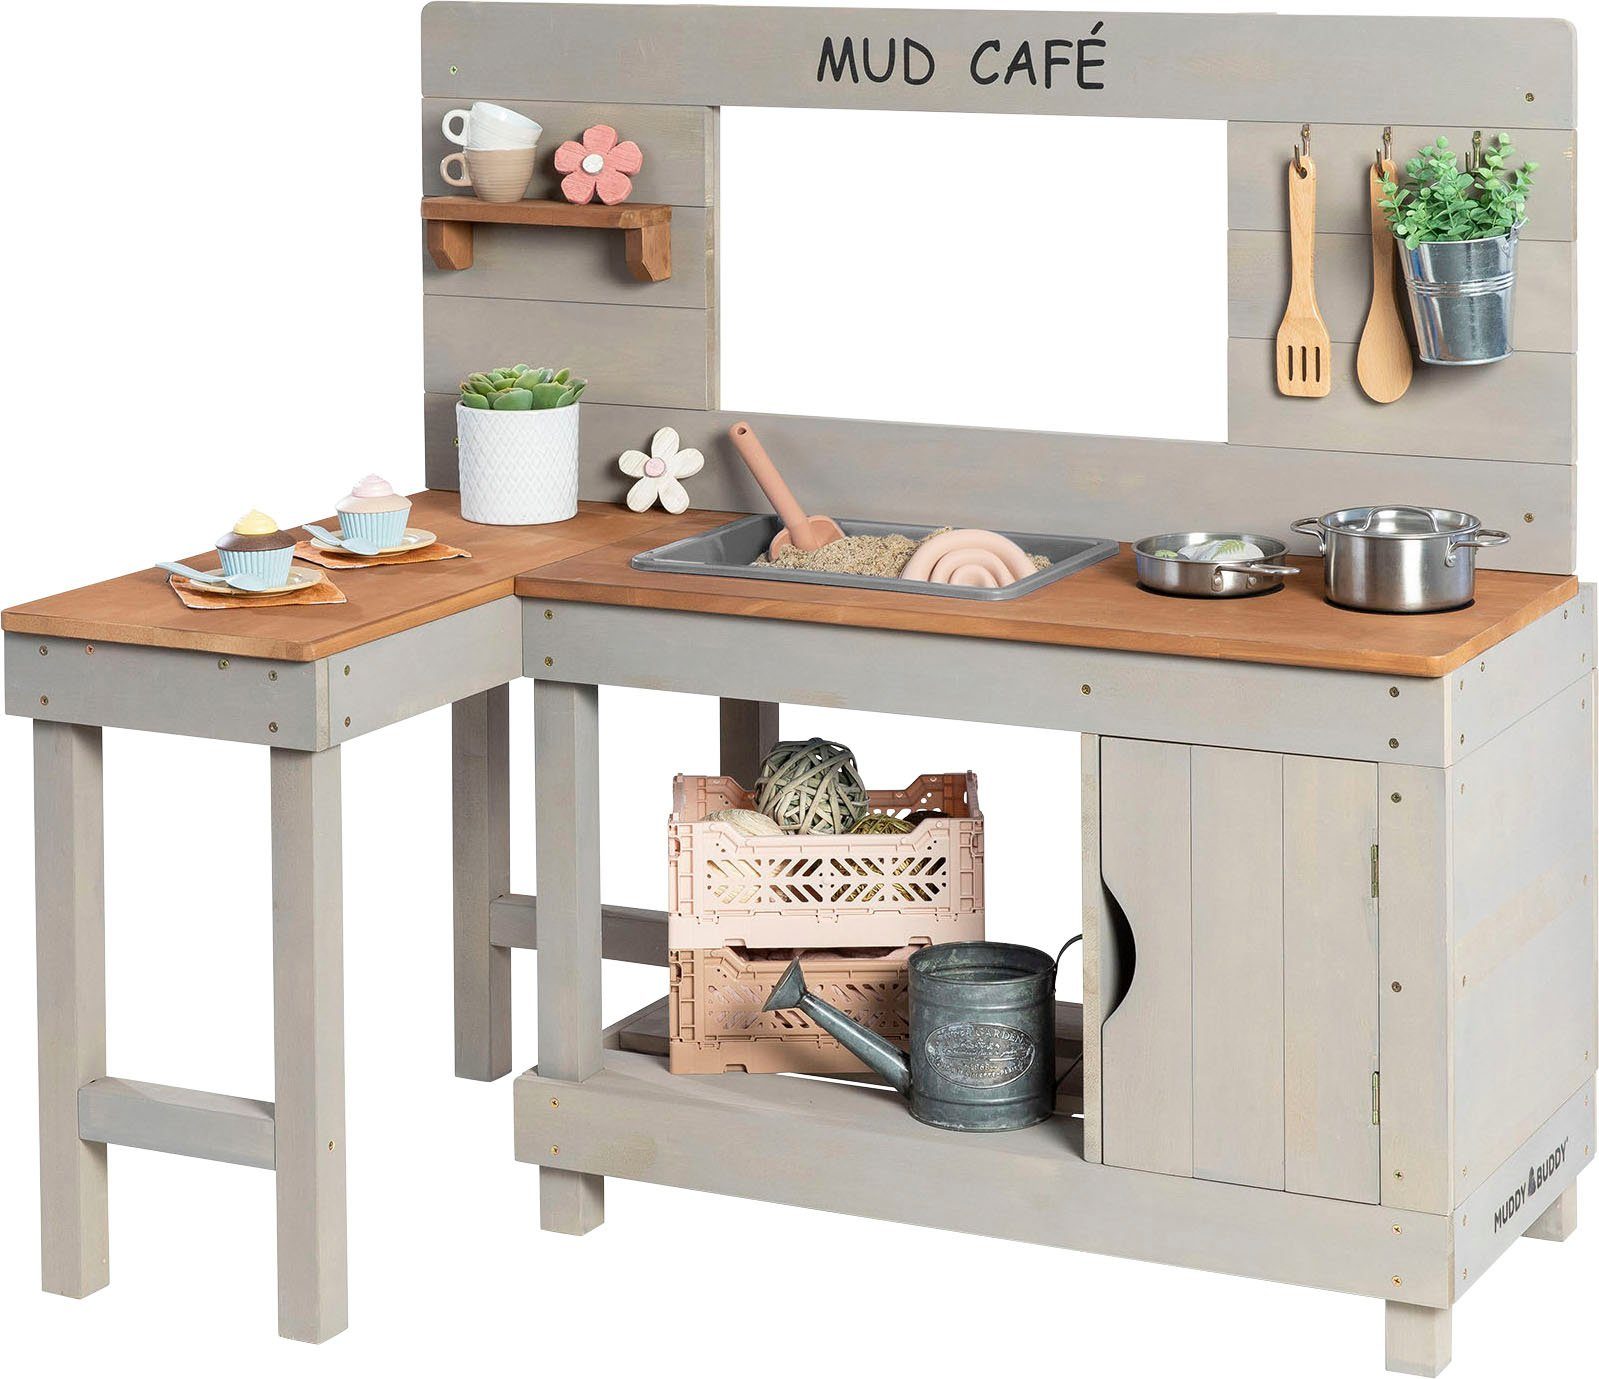 MUDDY BUDDY® Outdoor-Spielküche »Mud Café« Holz, BxTxH: 110x71,5x100 cm  online kaufen | OTTO